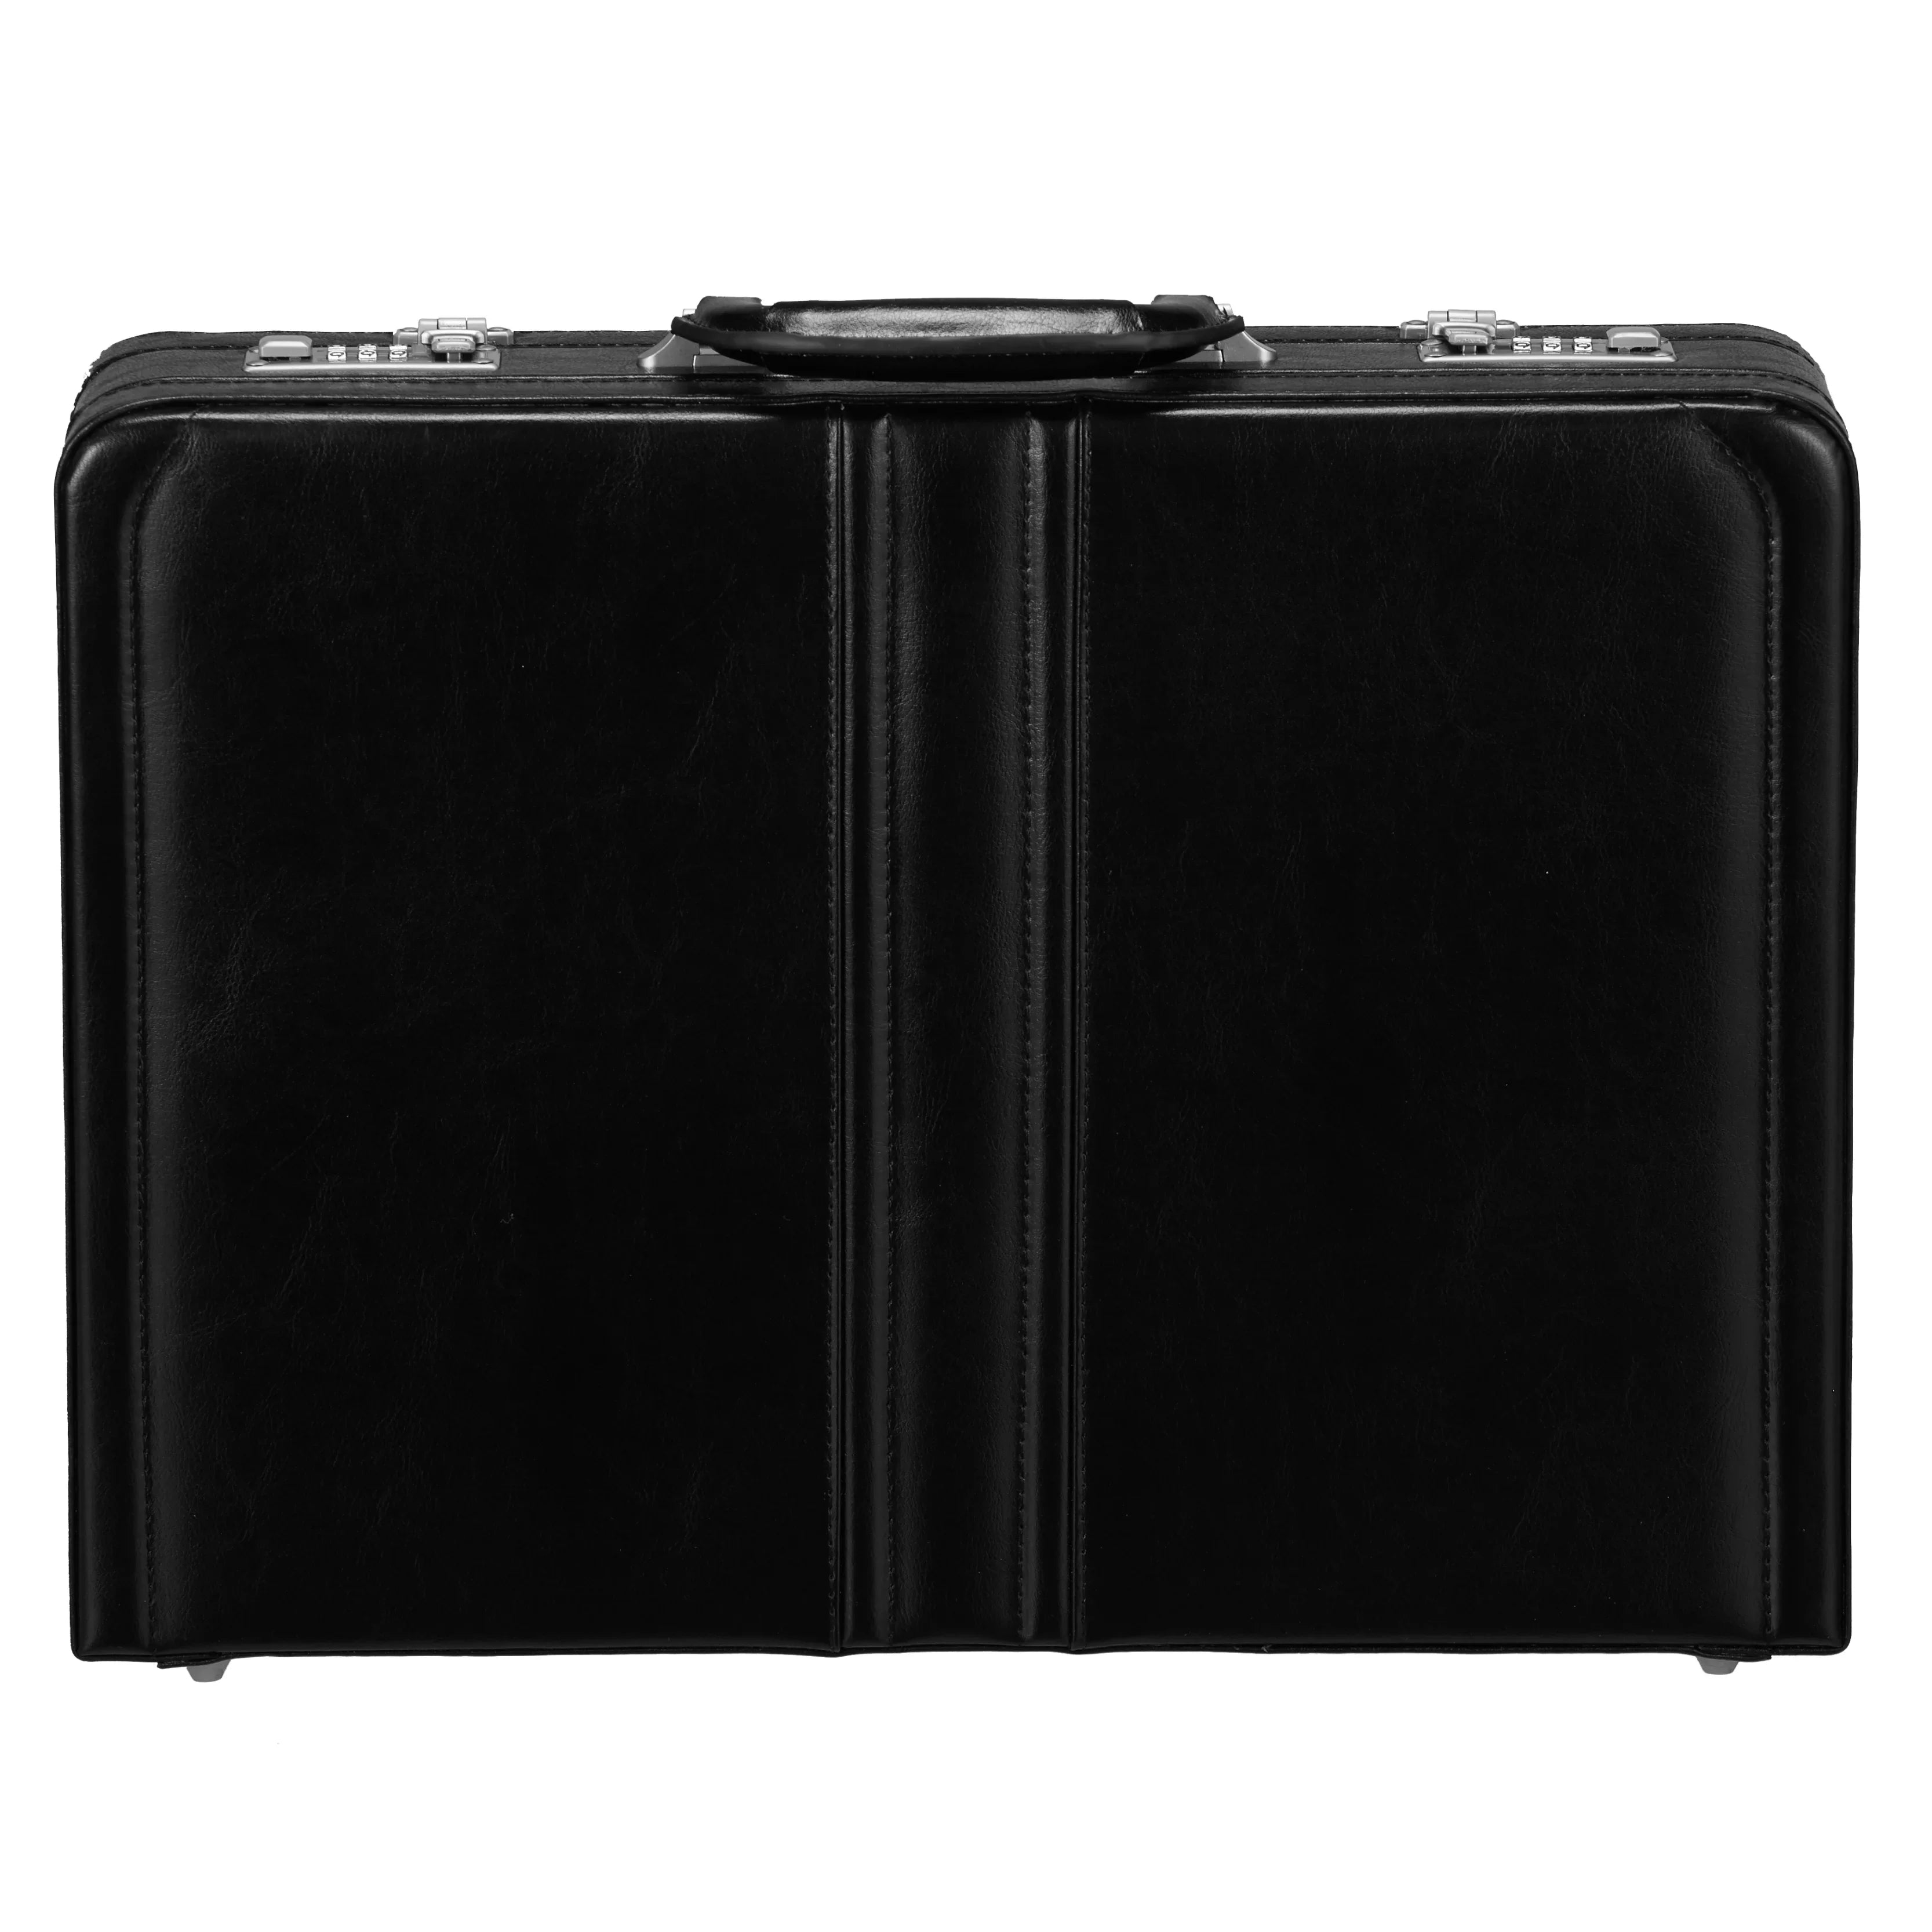 Dermata Business Briefcase 46 cm - Black